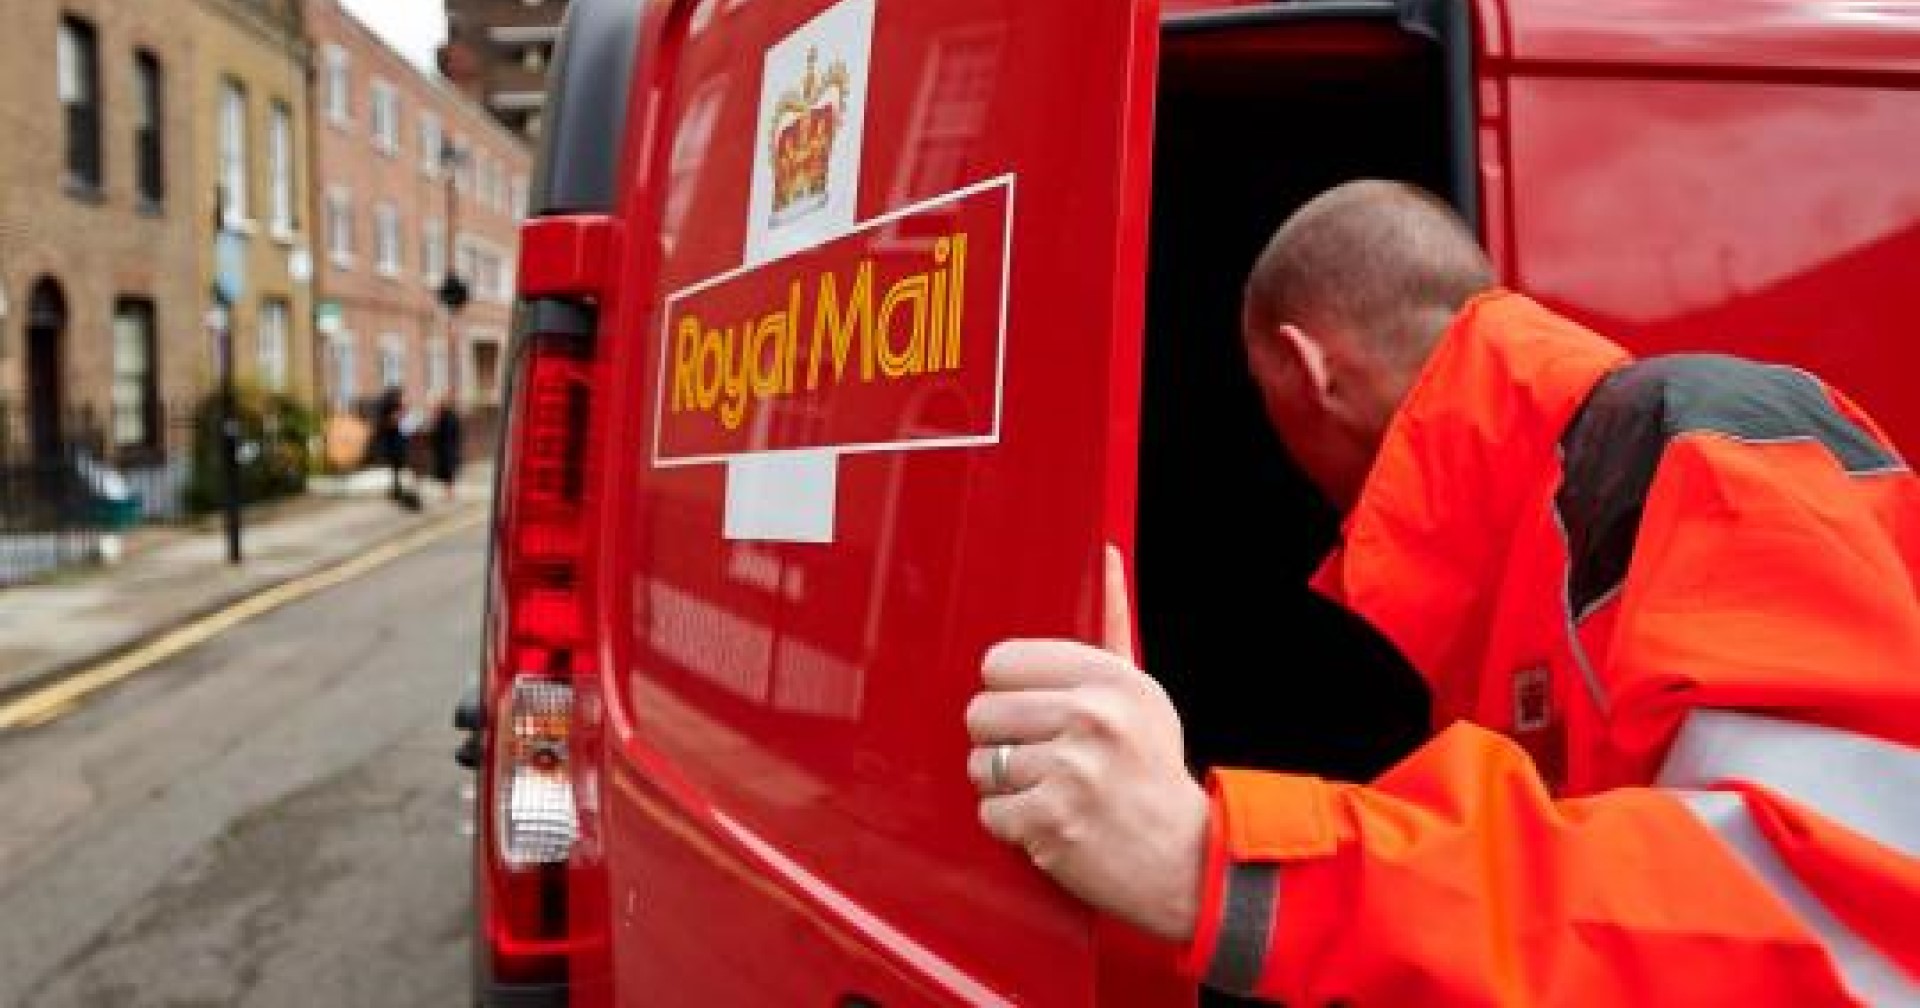 Royal Mail เริ่มใช้มาตรการฟื้นฟูผลกระทบจากการโจมตีทางไซเบอร์